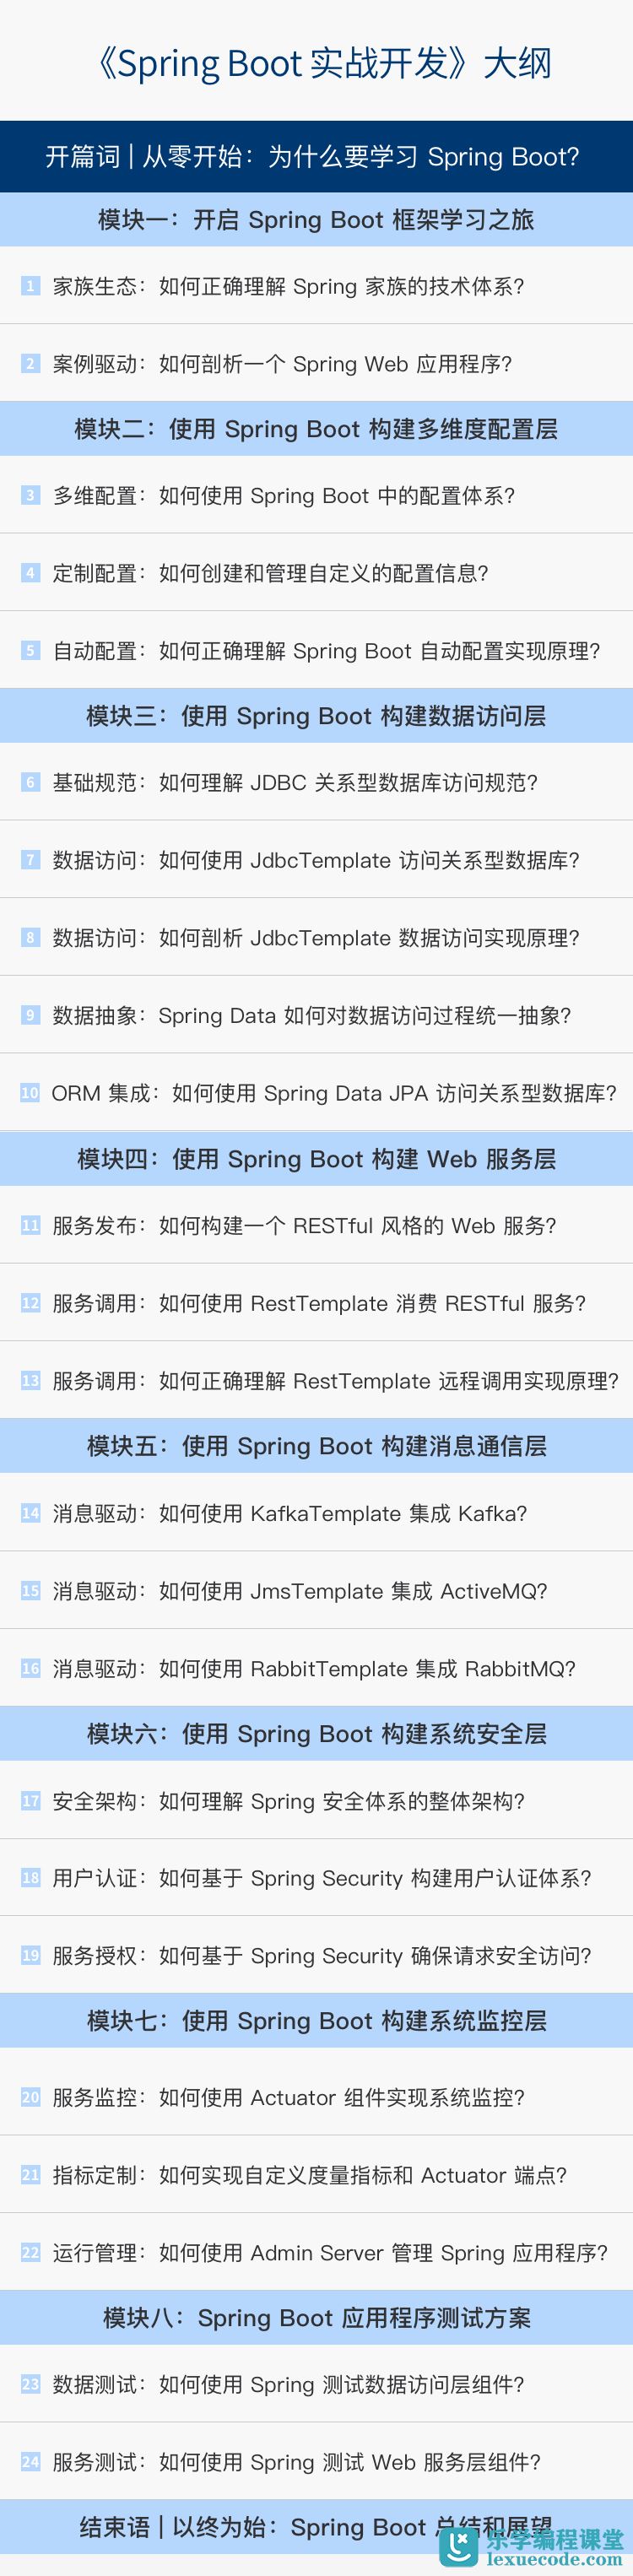 拉勾教育Spring Boot 实战开发